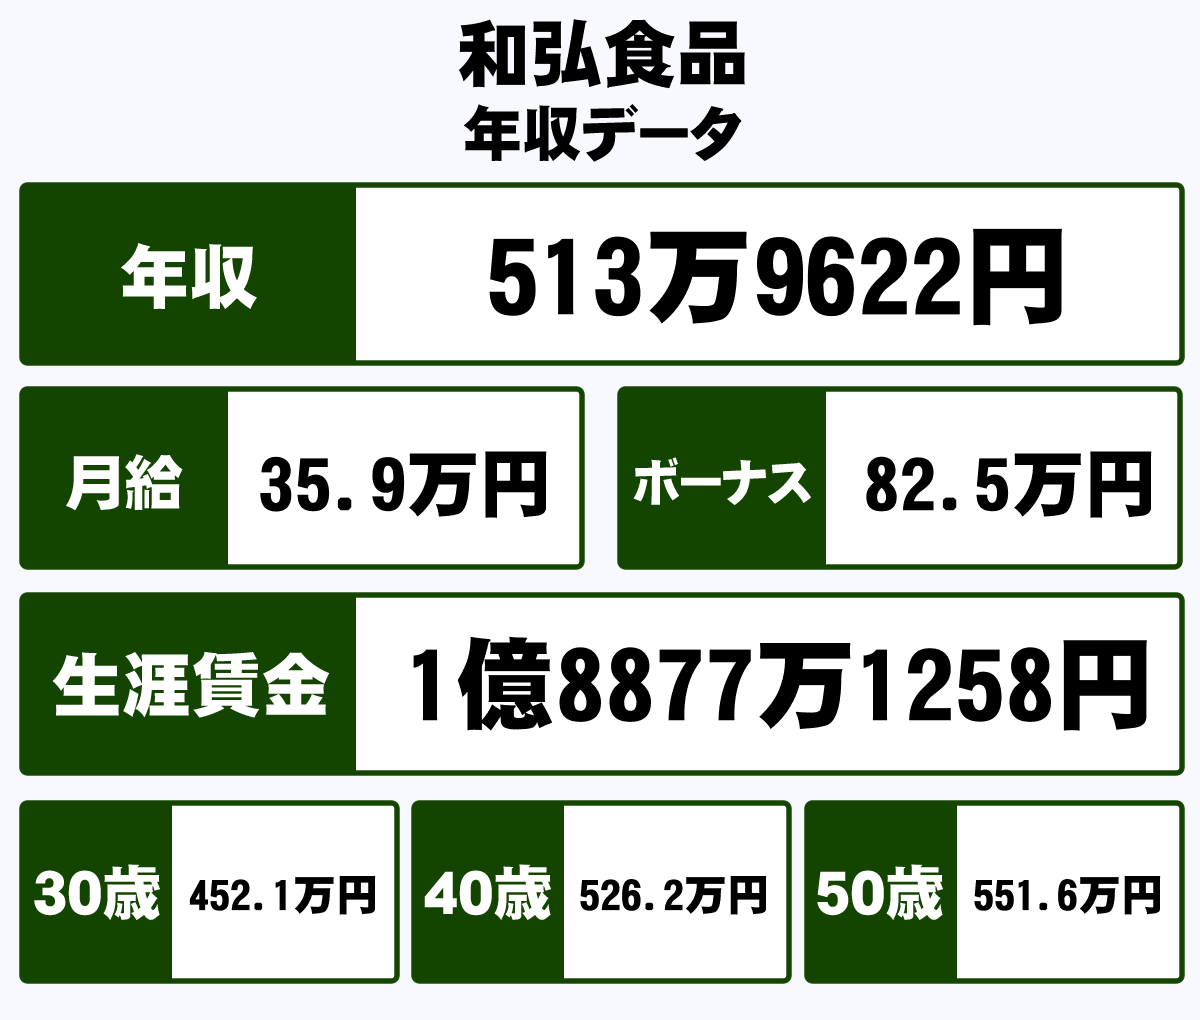 和弘食品株式会社の平均年収 513万円 生涯賃金やボーナス 年収推移 初任給など 年収ガイド